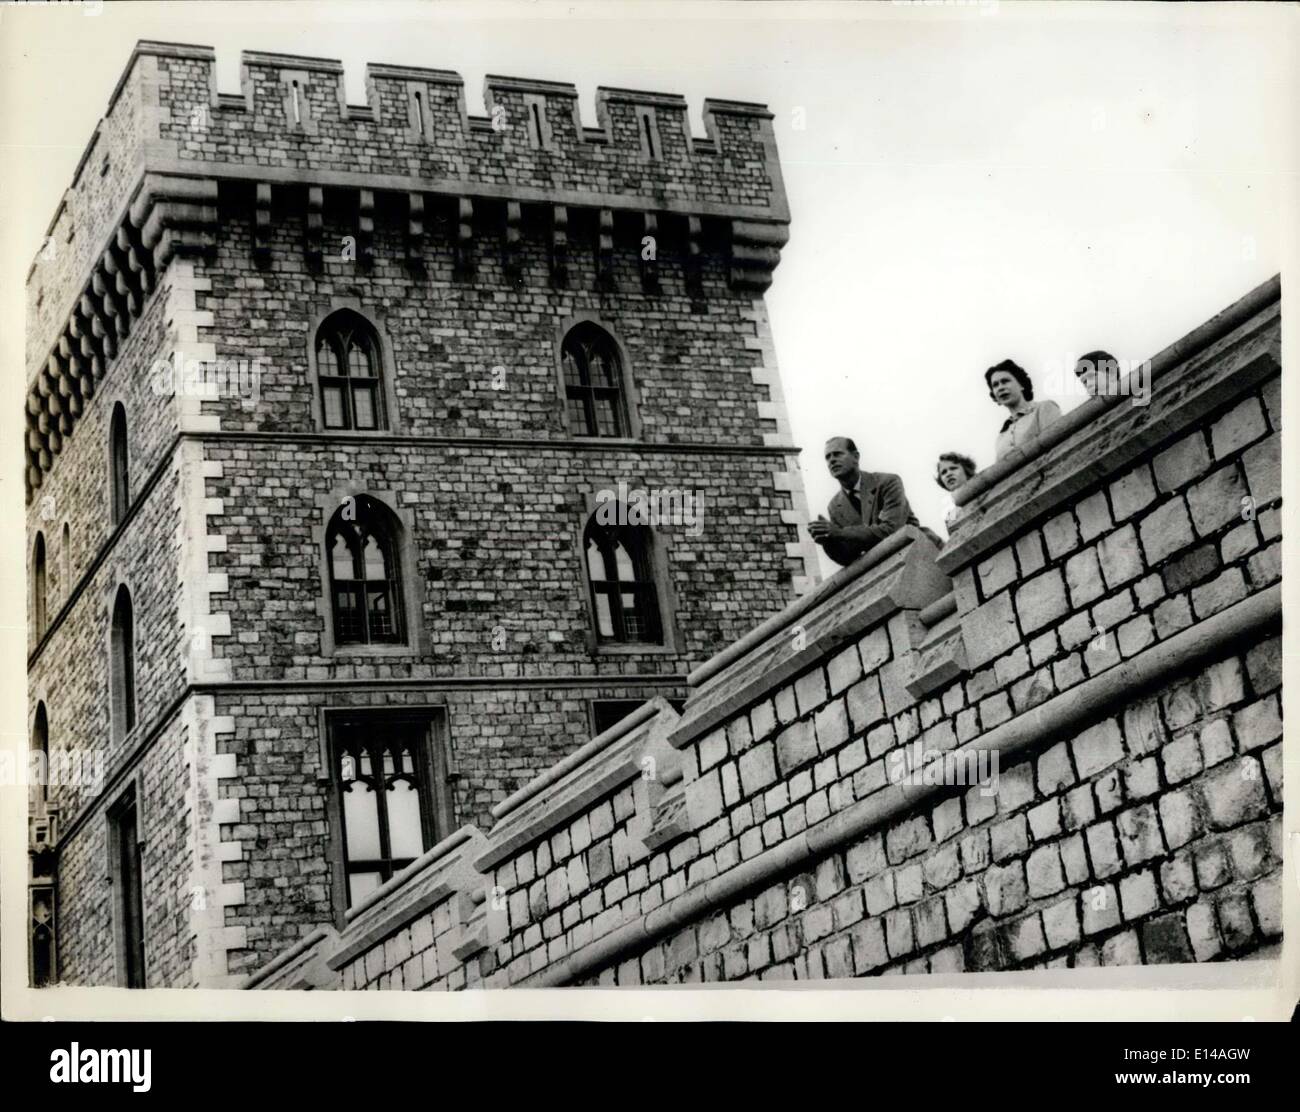 17. April 2012 - nicht zu vor der Samstag, 6. Juni 1959 Tageszeitungen veröffentlicht werden. Die Königin mit ihrer Familie auf Schloss Windsor. Die Königin und ihre Familie auf dem Osten Terrance mit der Königin Turm im Hintergrund. Stockfoto